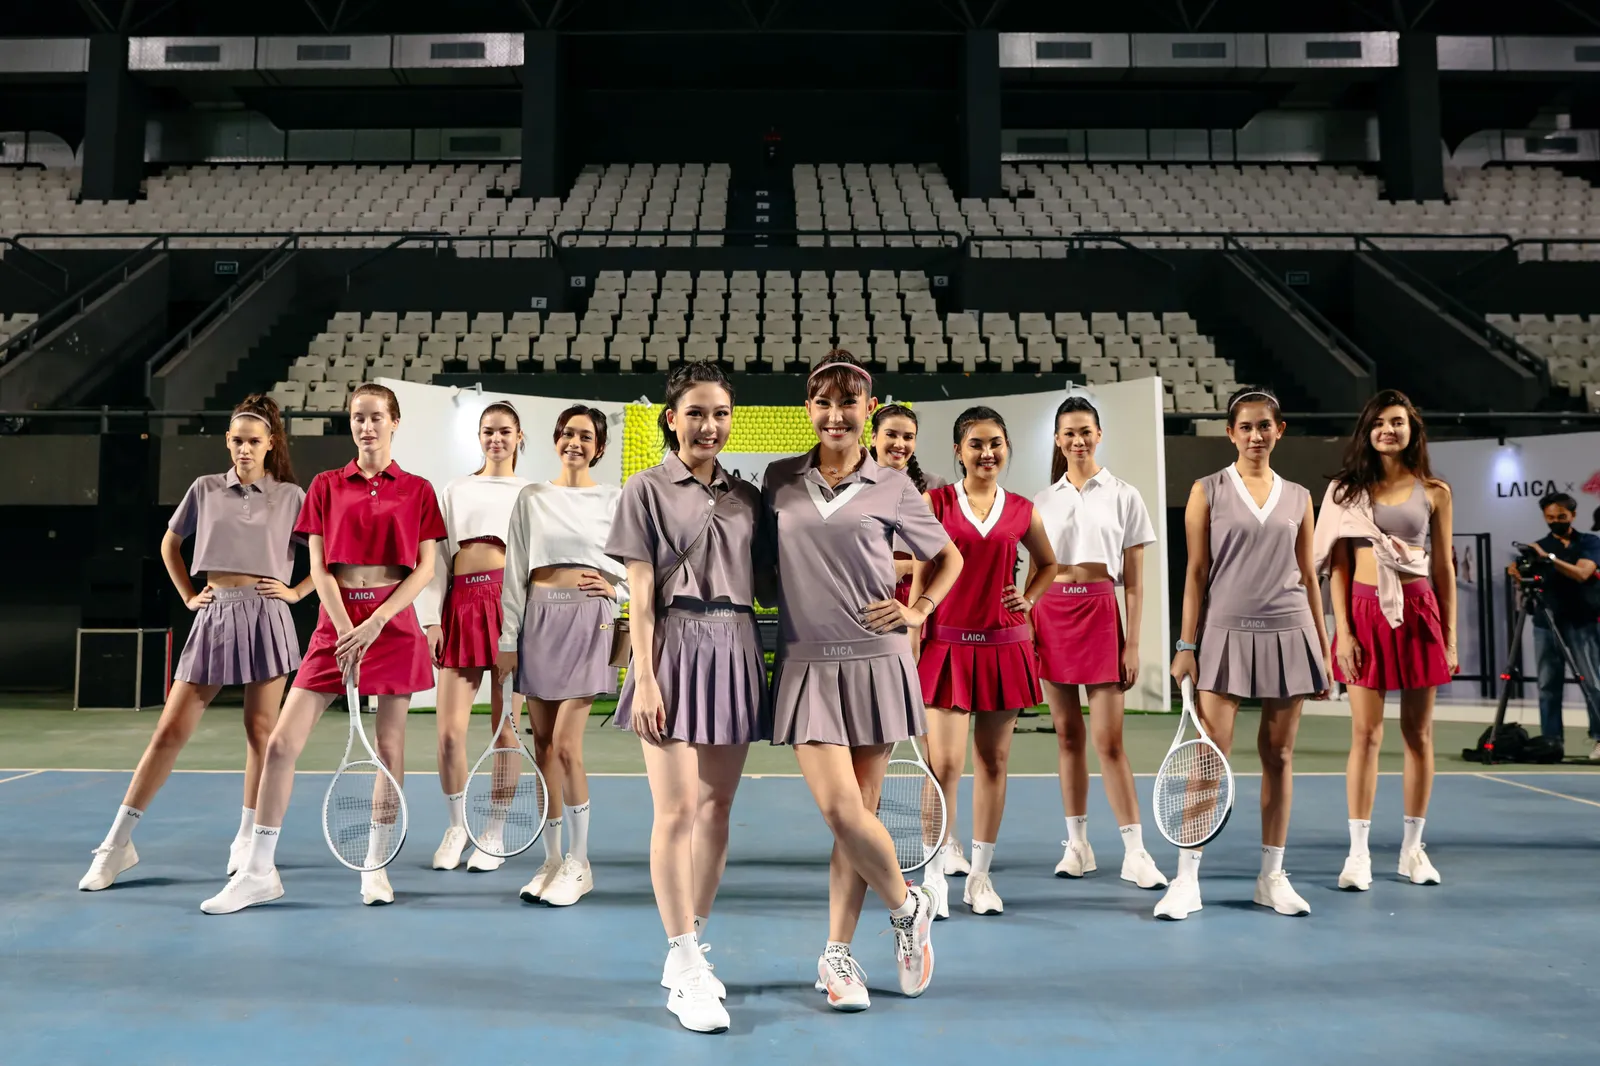 Kolaborasi LAICA x Ayu Dewi, Luncurkan Pakaian Tenis yang Super Gemas!